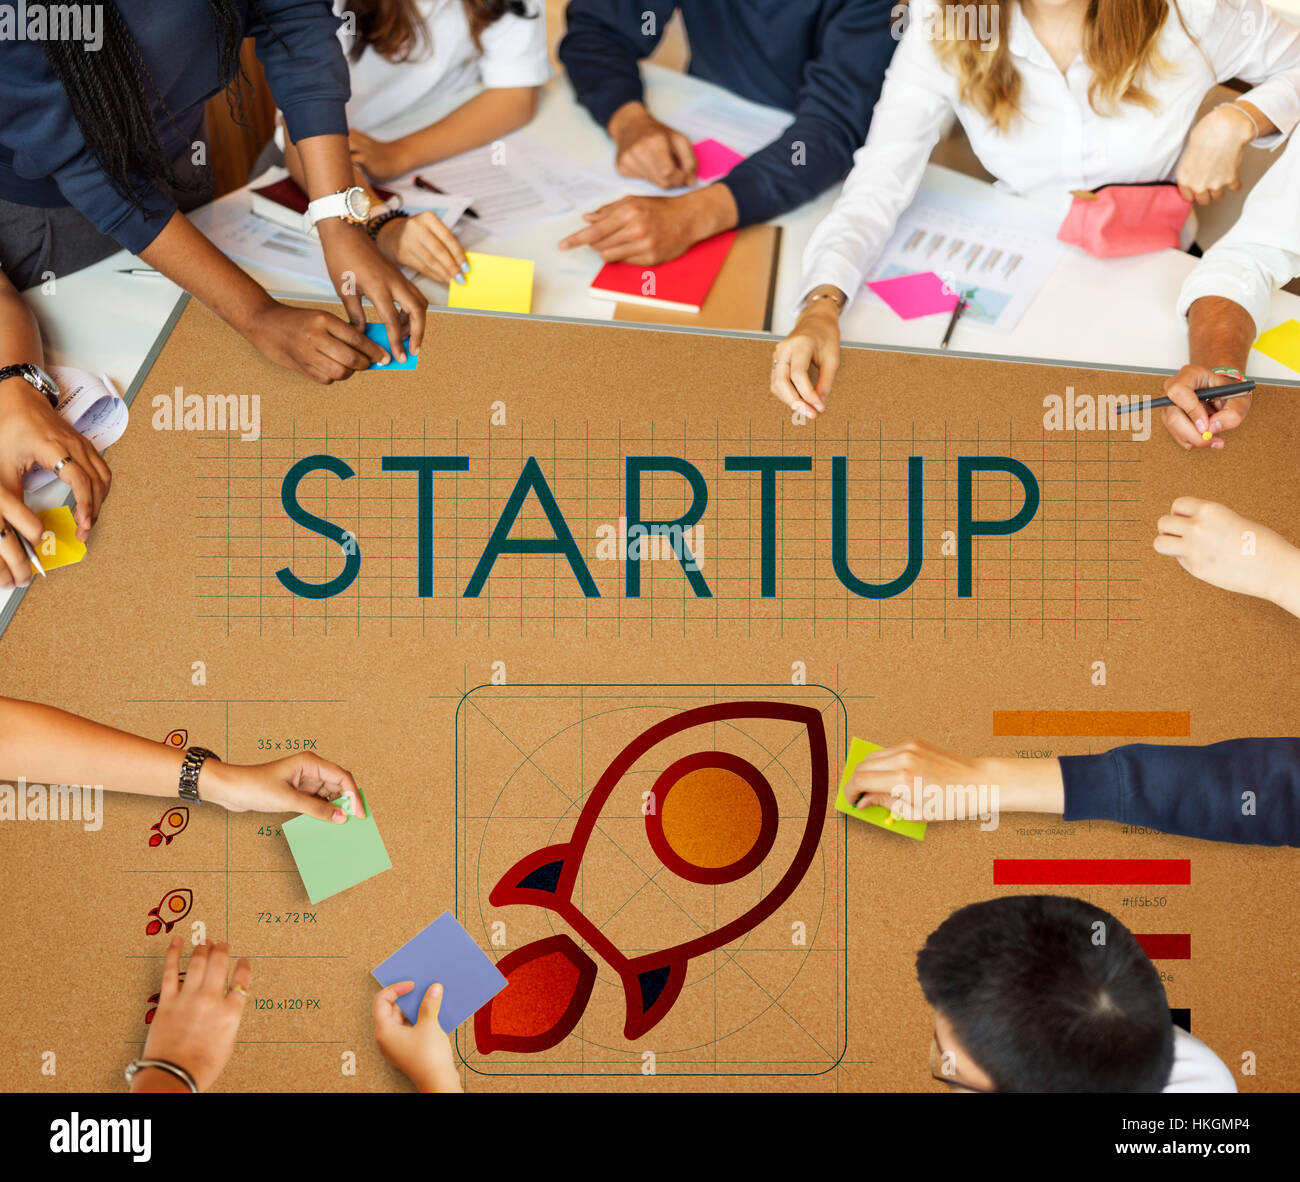 Startup Business Entrepreneurship Launch-Konzept Stockfoto